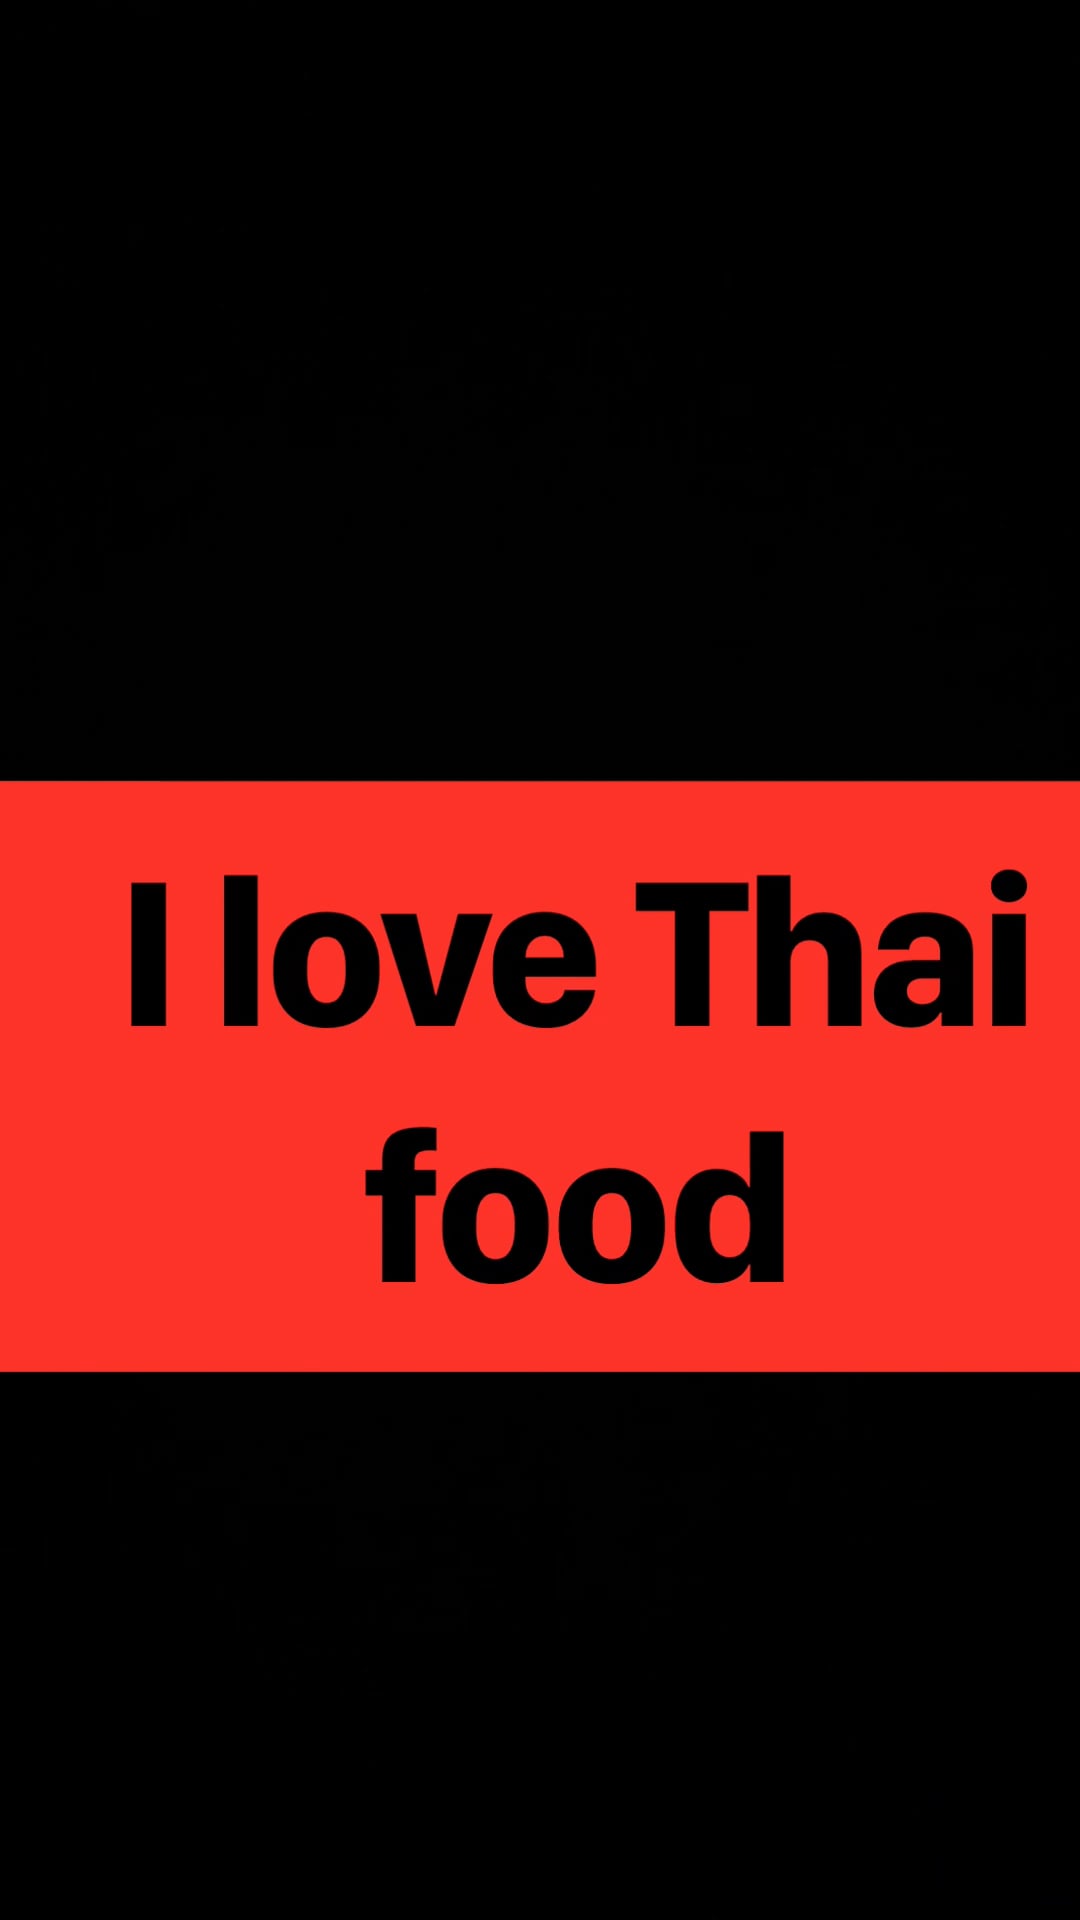 I Love Thai Food On Vimeo